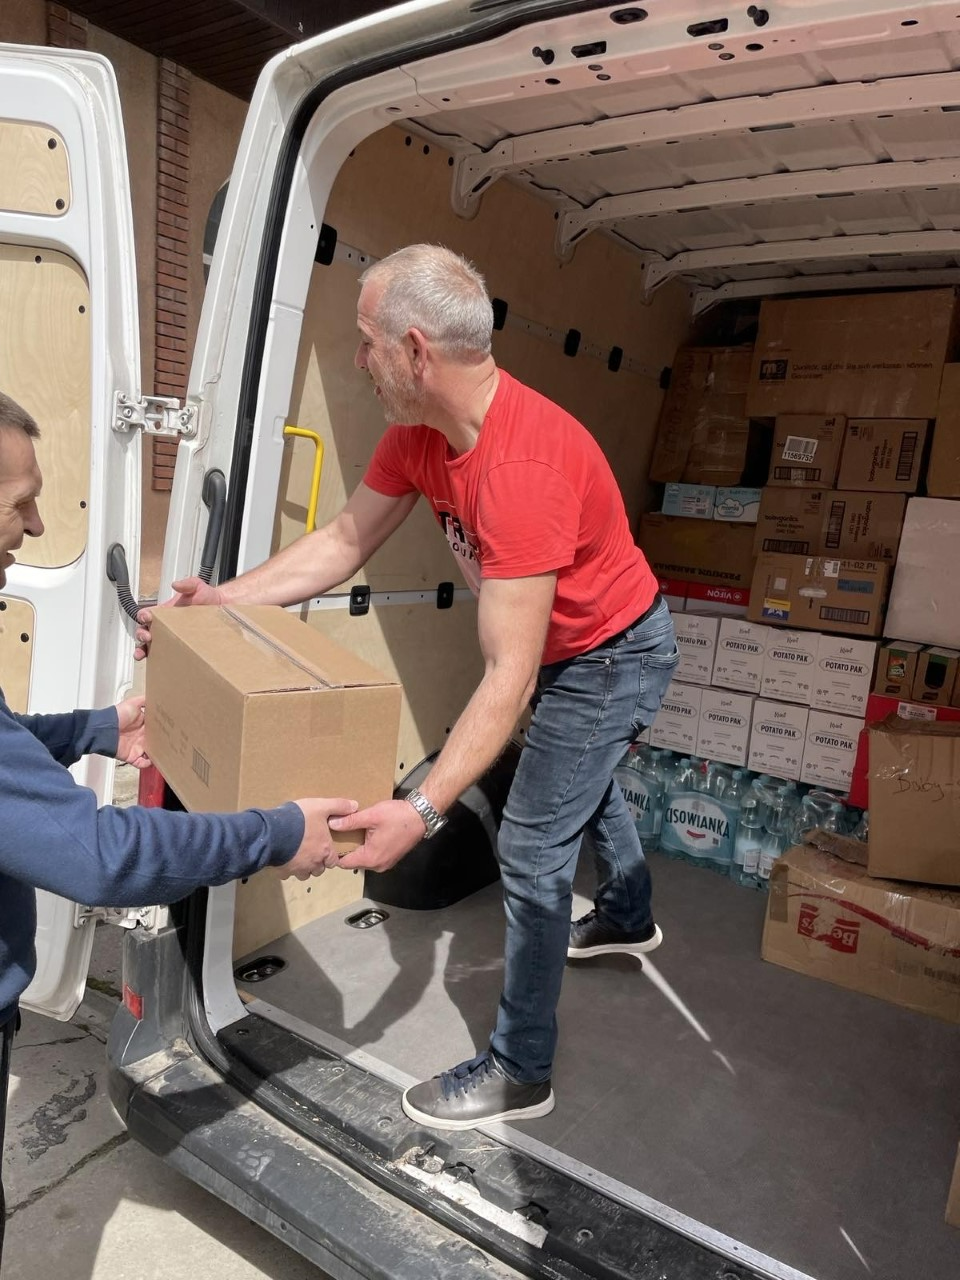 New Cargo Van for Ukraine Humanitarian Aid